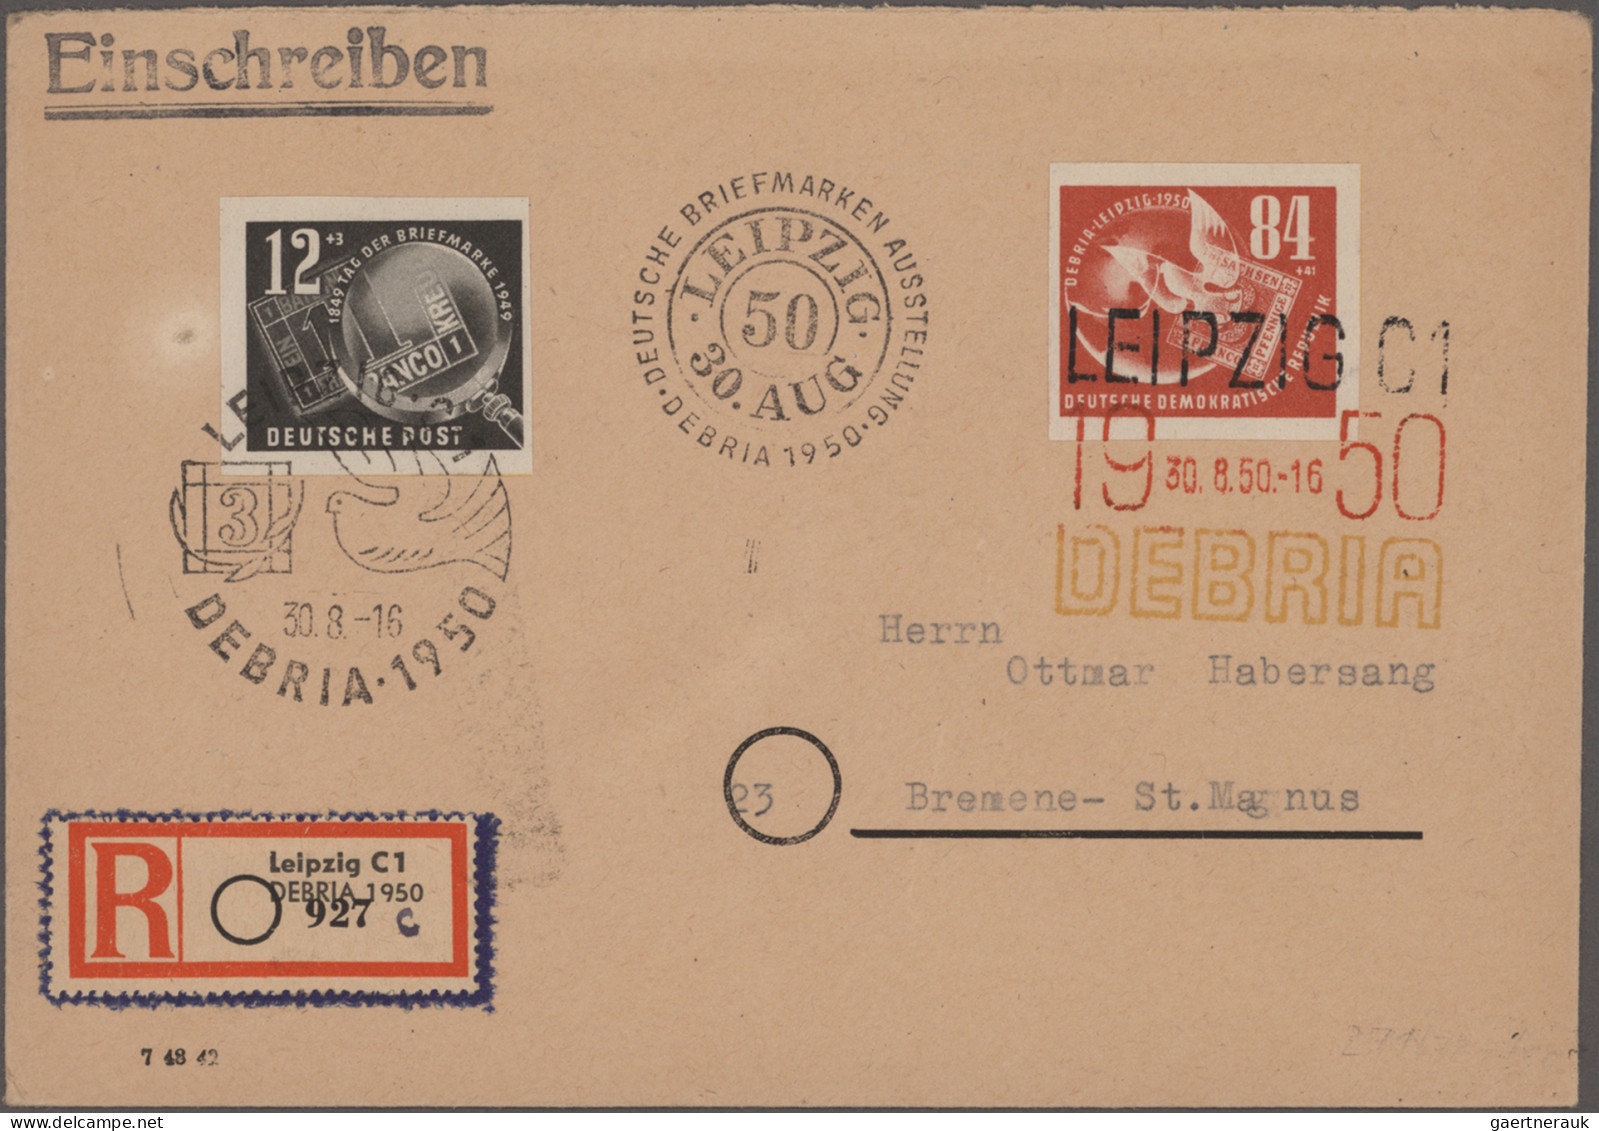 DDR: 1949/1964, Partie von ca. 200 Briefen und Karten mit etlichen interessanten